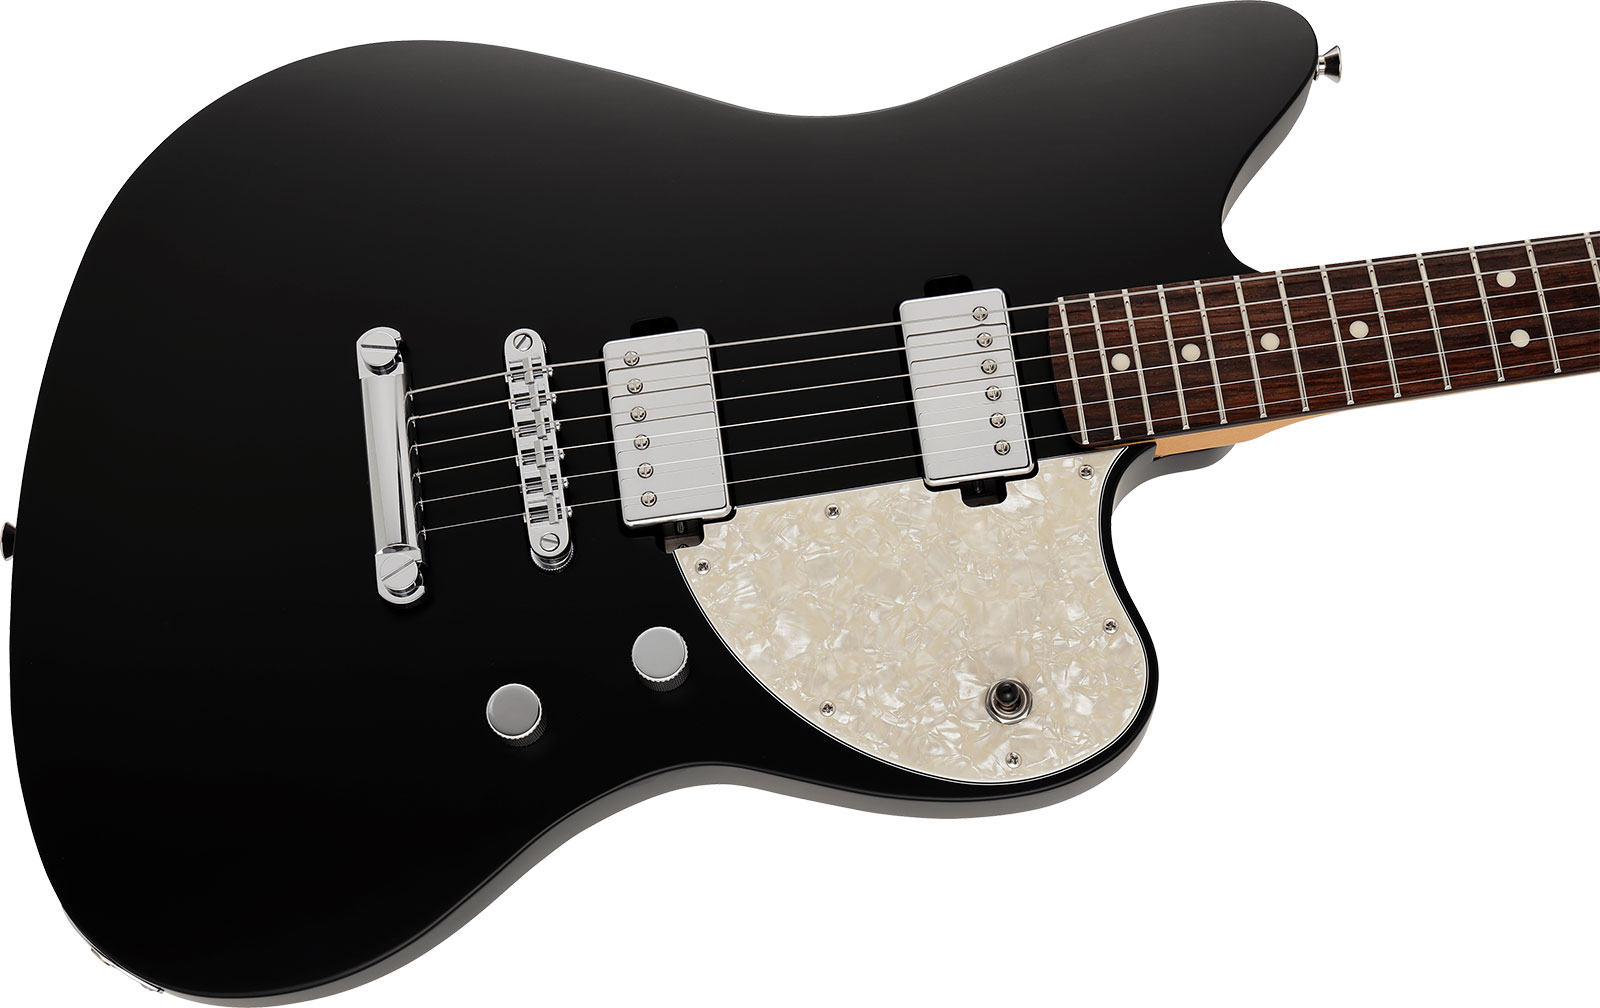 Fender Jazzmaster Elemental Mij Jap 2h Ht Rw - Stone Black - Televorm elektrische gitaar - Variation 2